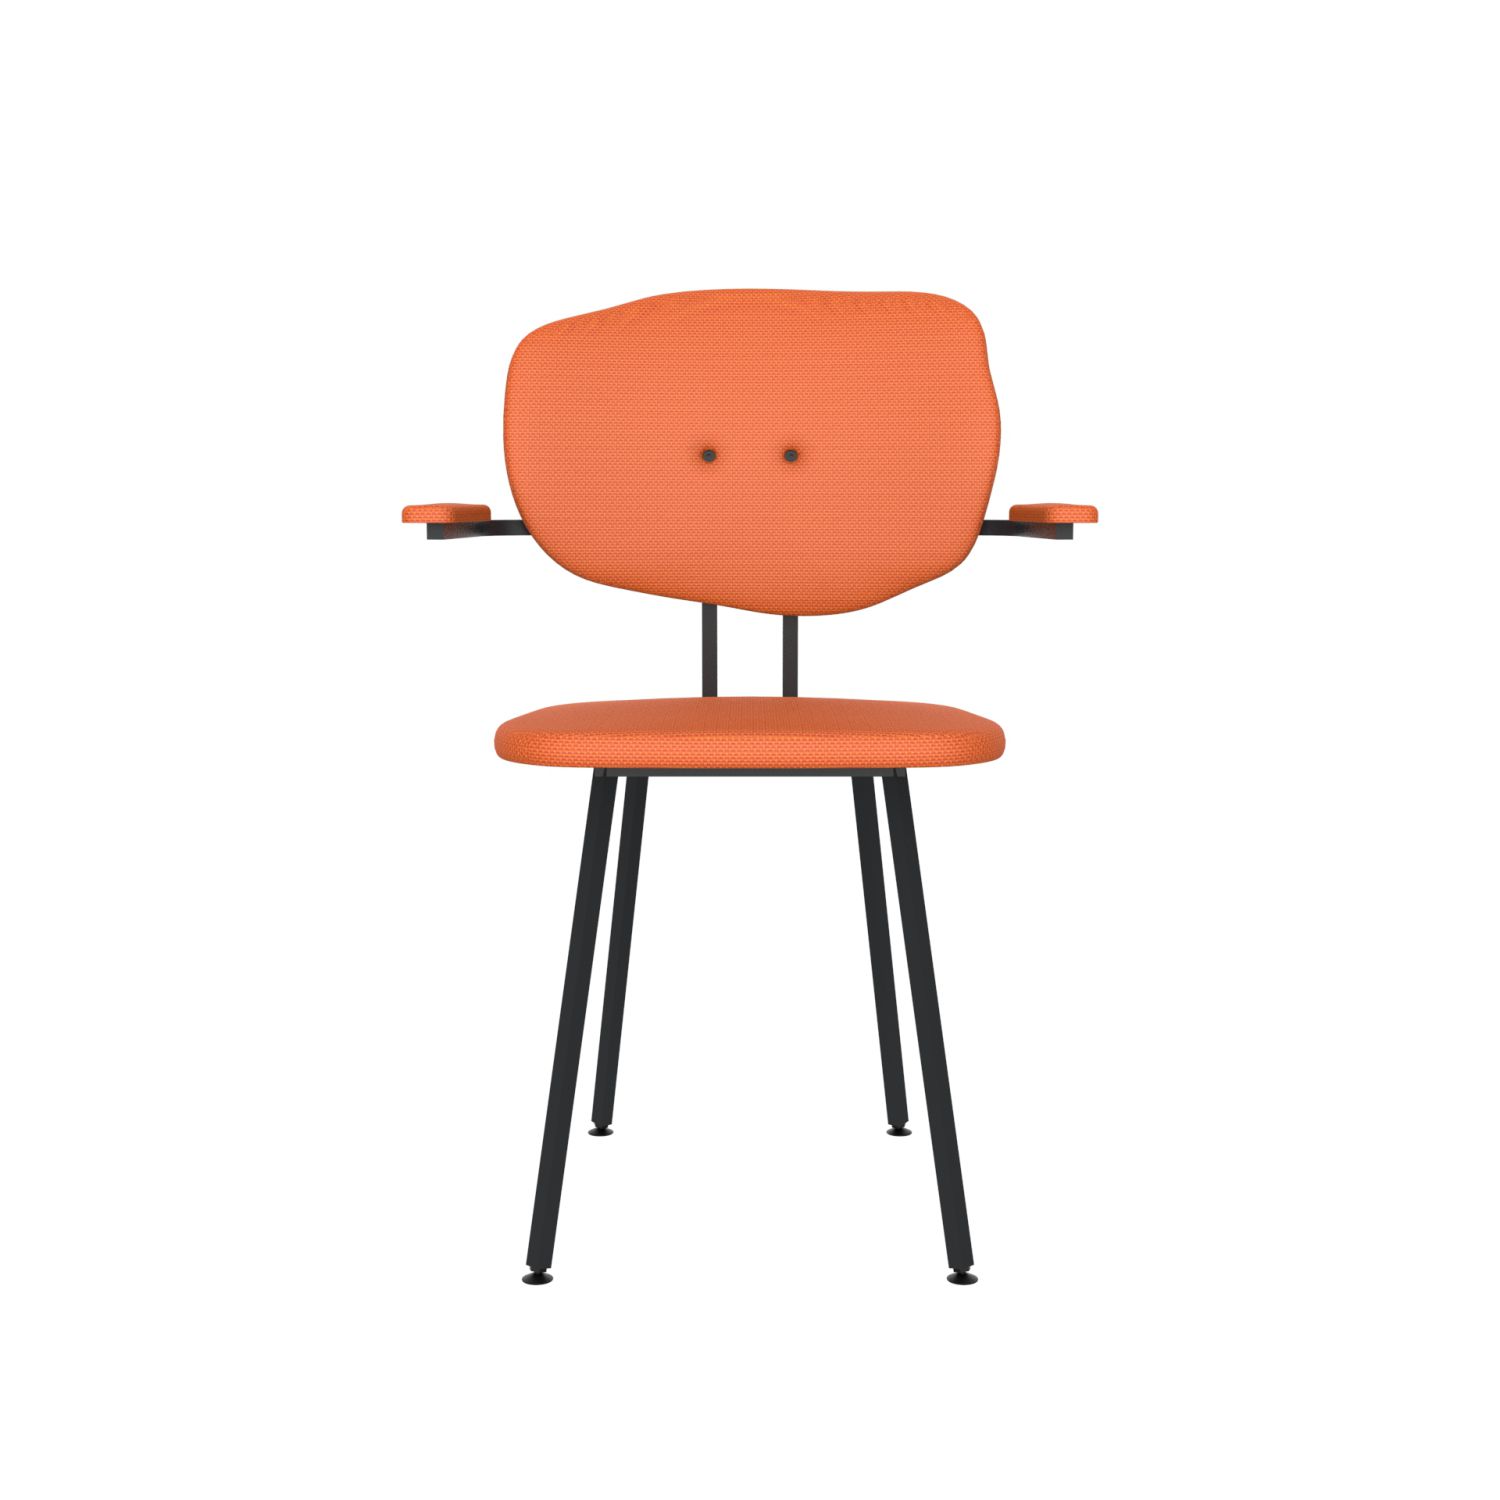 lensvelt maarten baas chair 102 not stackable with armrests backrest f burn orange 102 black ral9005 hard leg ends